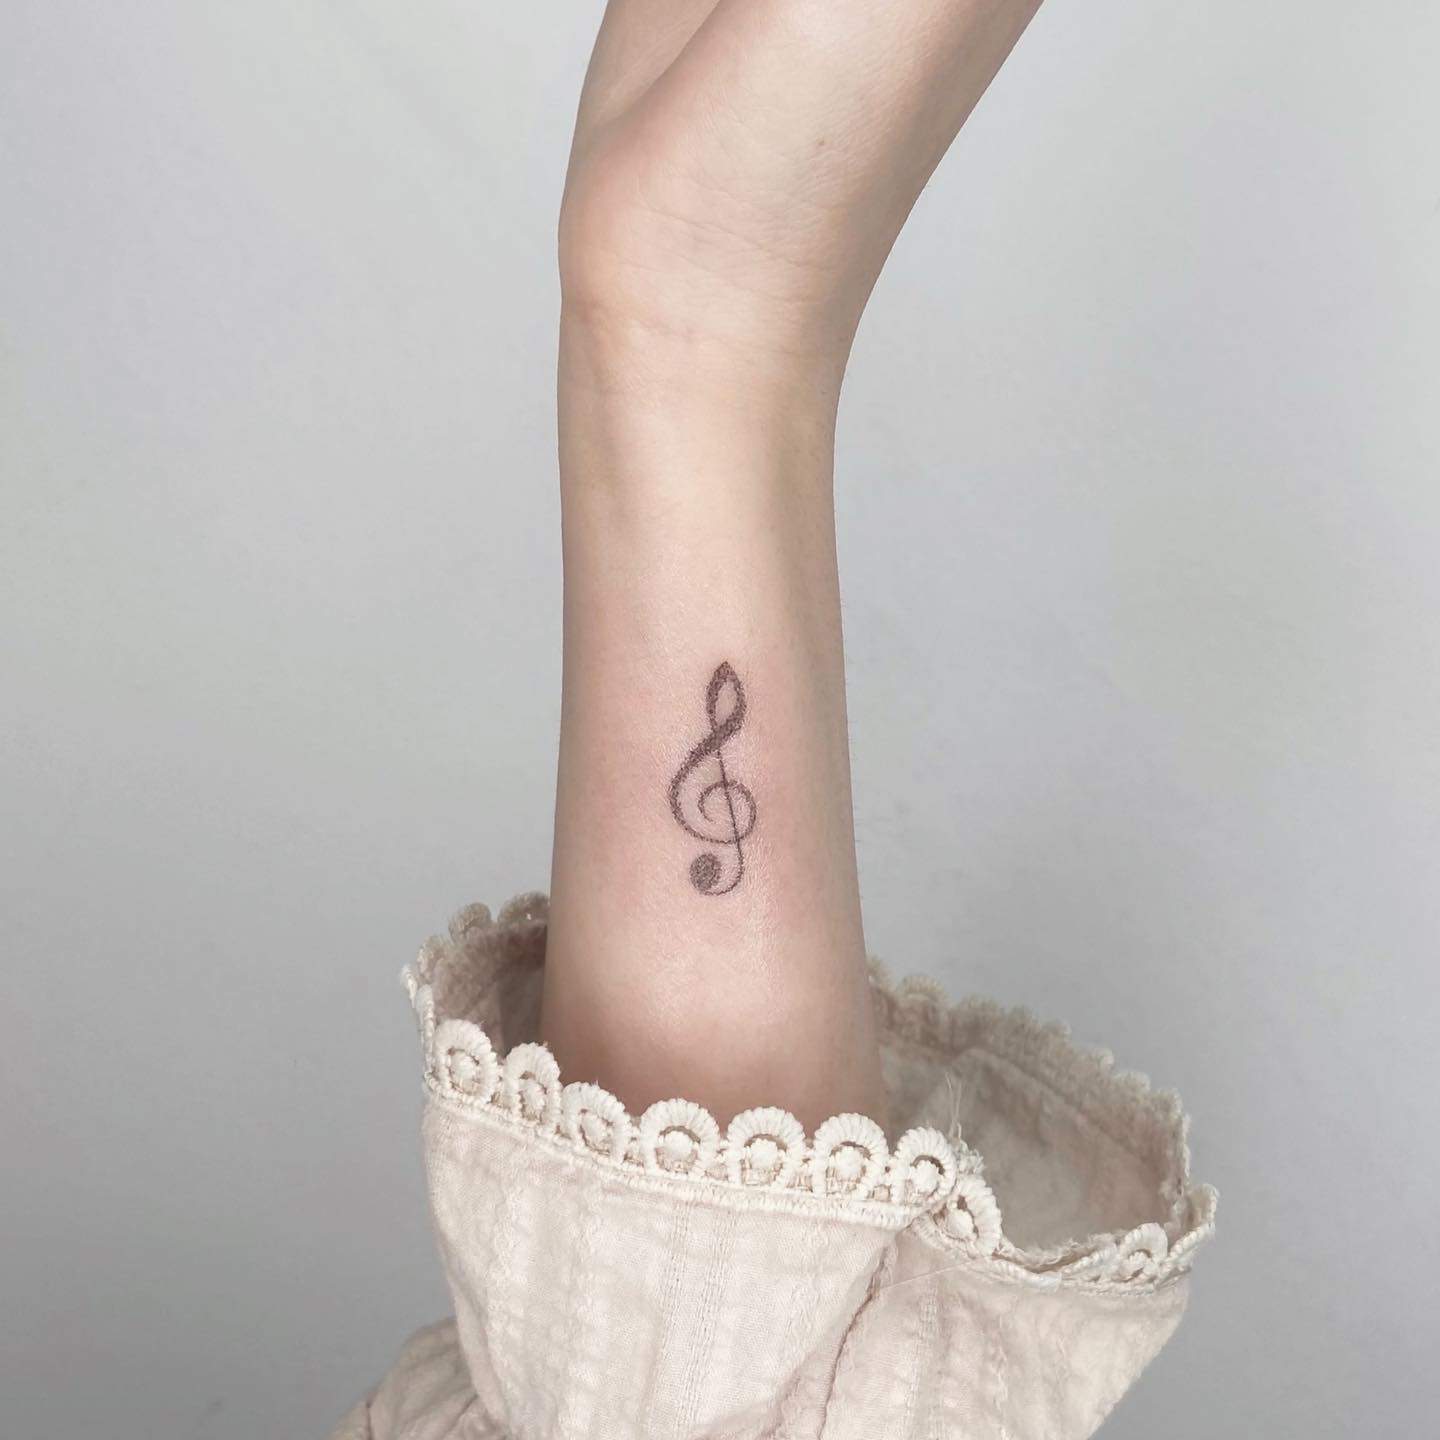 Music tattoo on wrist by saenalpoke